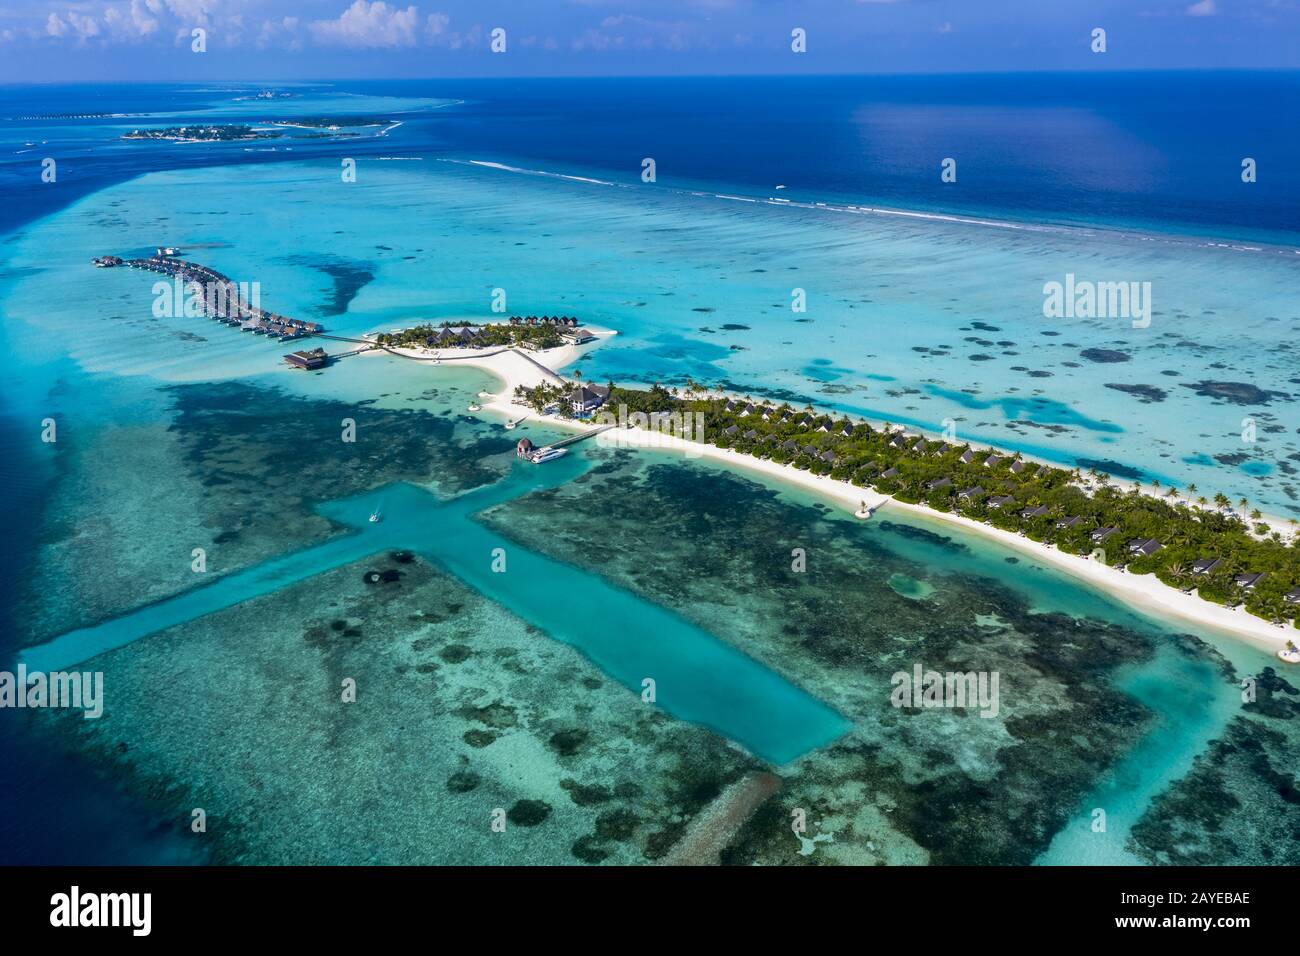 Vue aérienne, lagon de l'île des Maldives Maadhoo, South Male Atoll, Maldives Banque D'Images